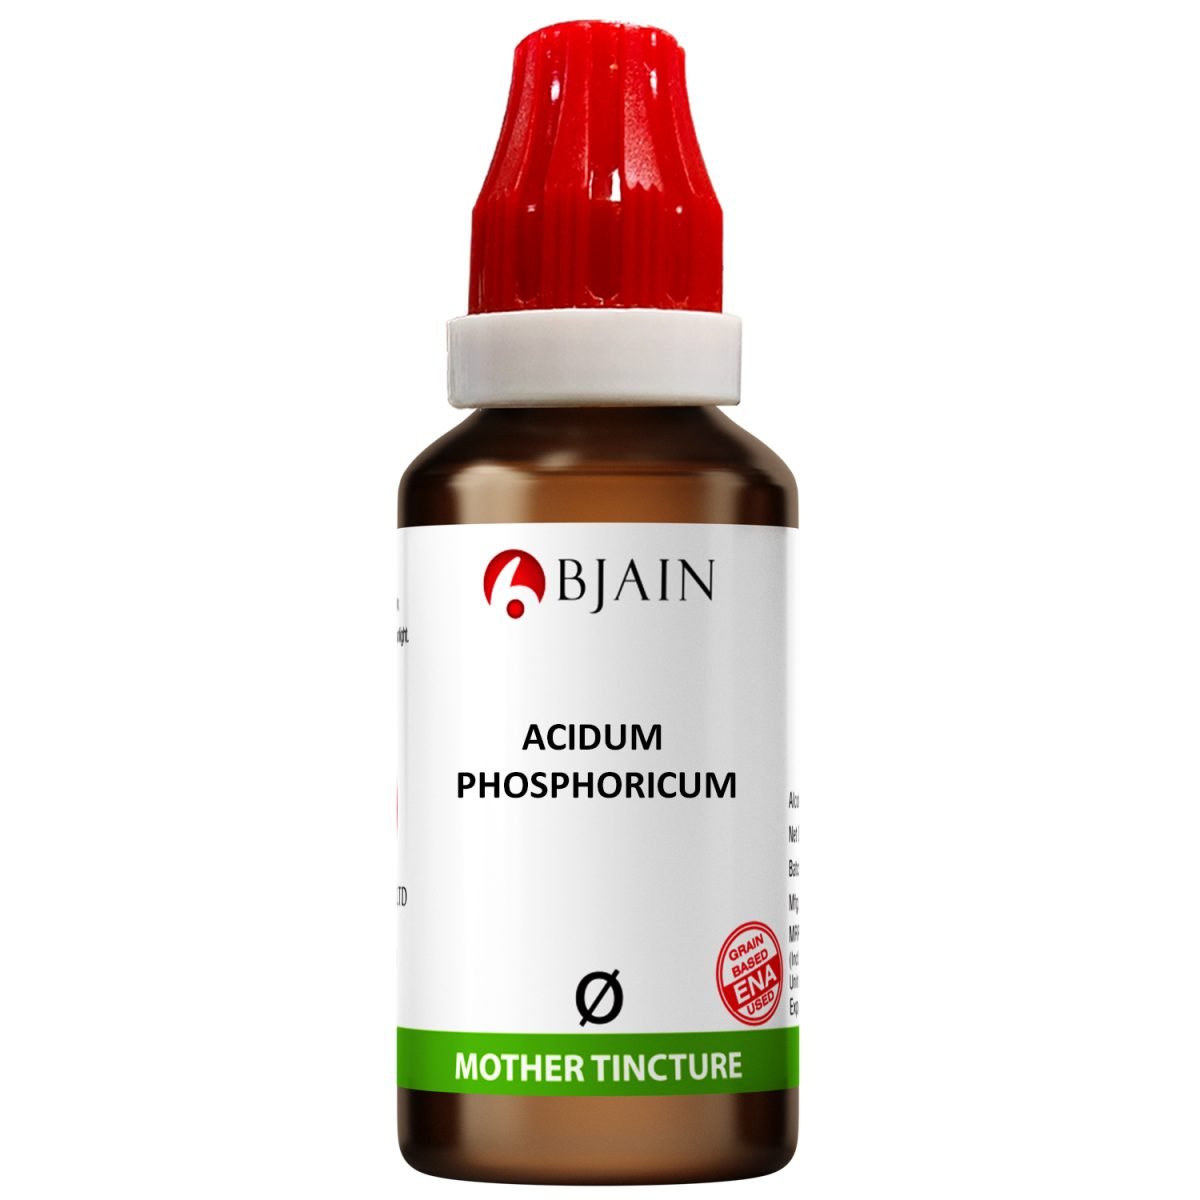 BJain Acidum Phosphoricum Q Mother Tincture